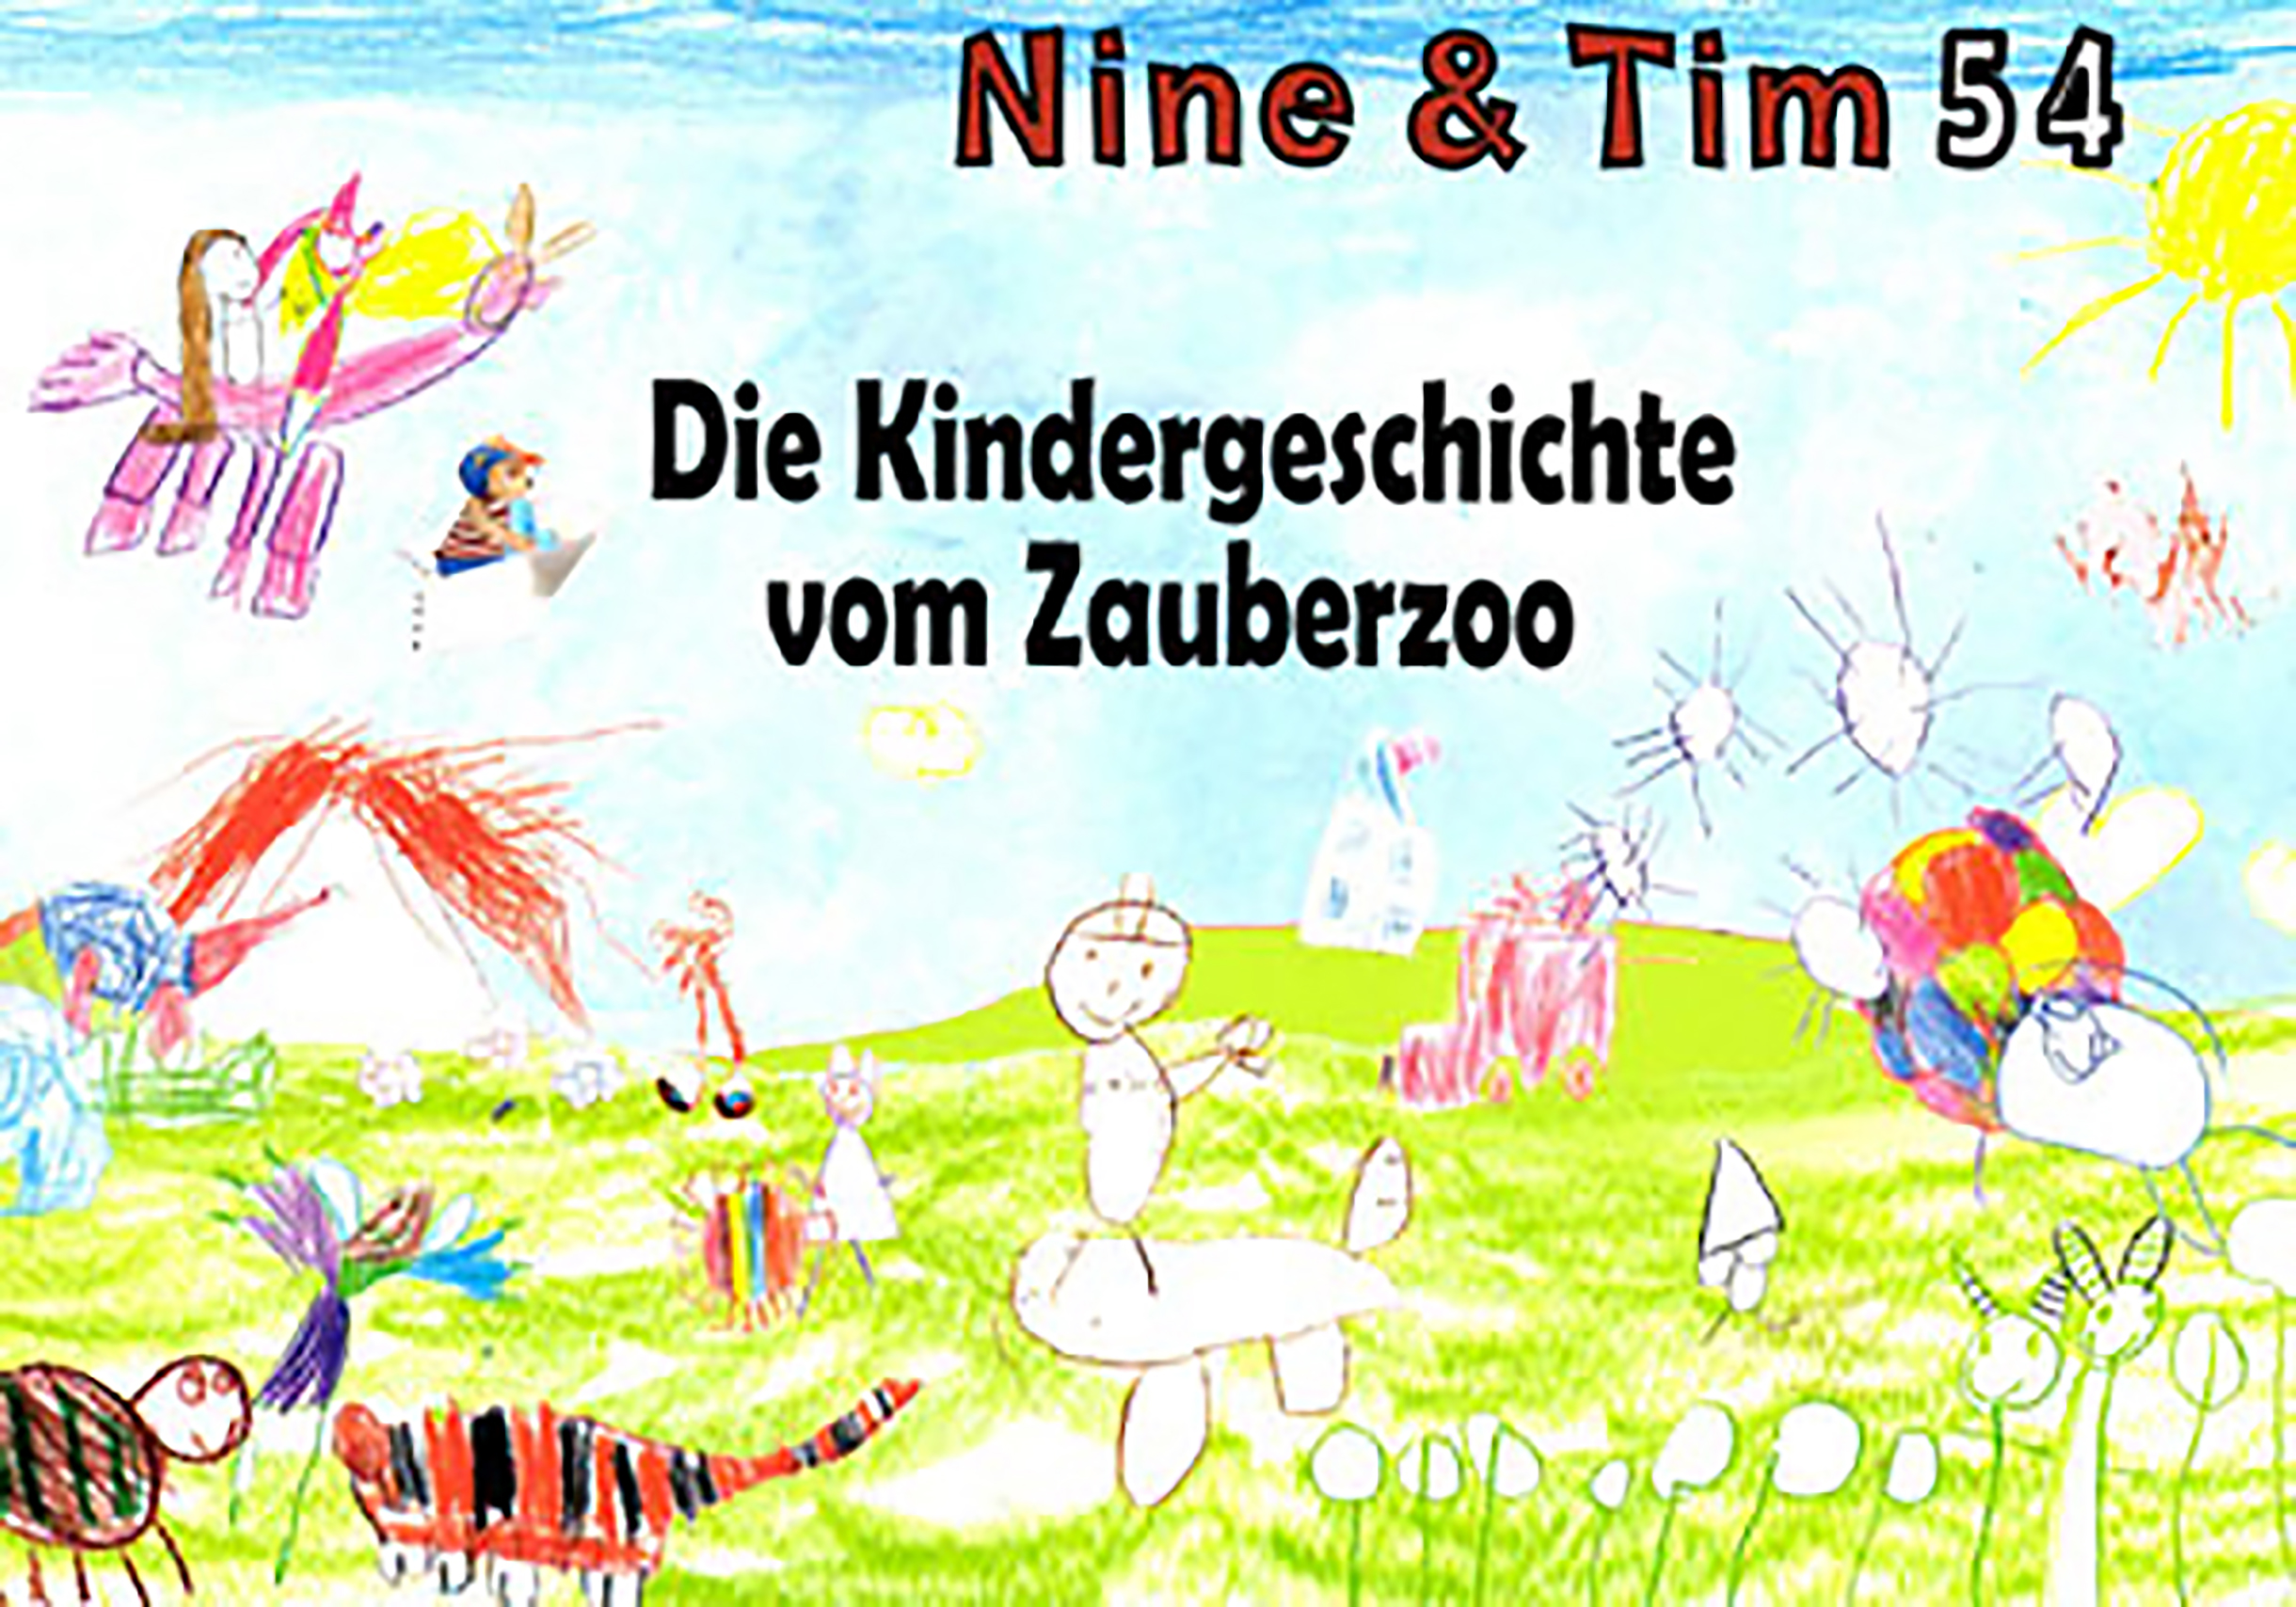 Das Bild zeigt ein Cover der Publikation Nine  Tim Heft 54